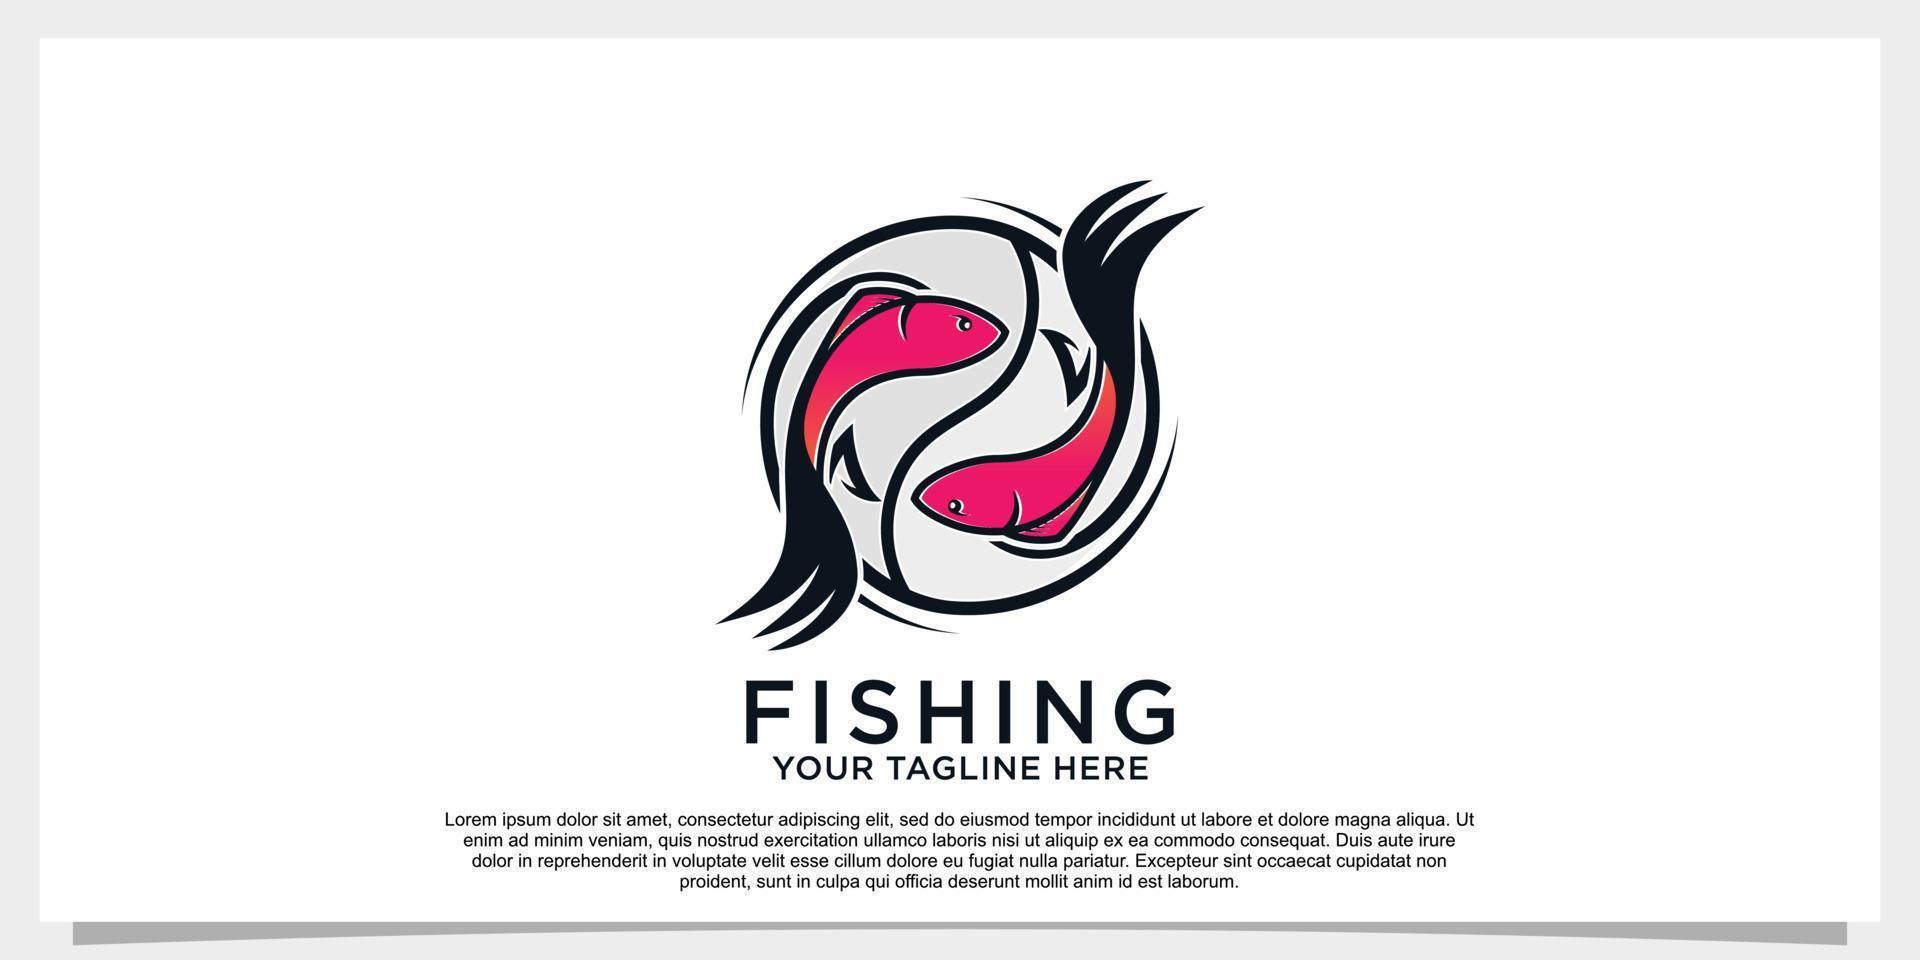 Fish logo design simple concept unique Premium Vector